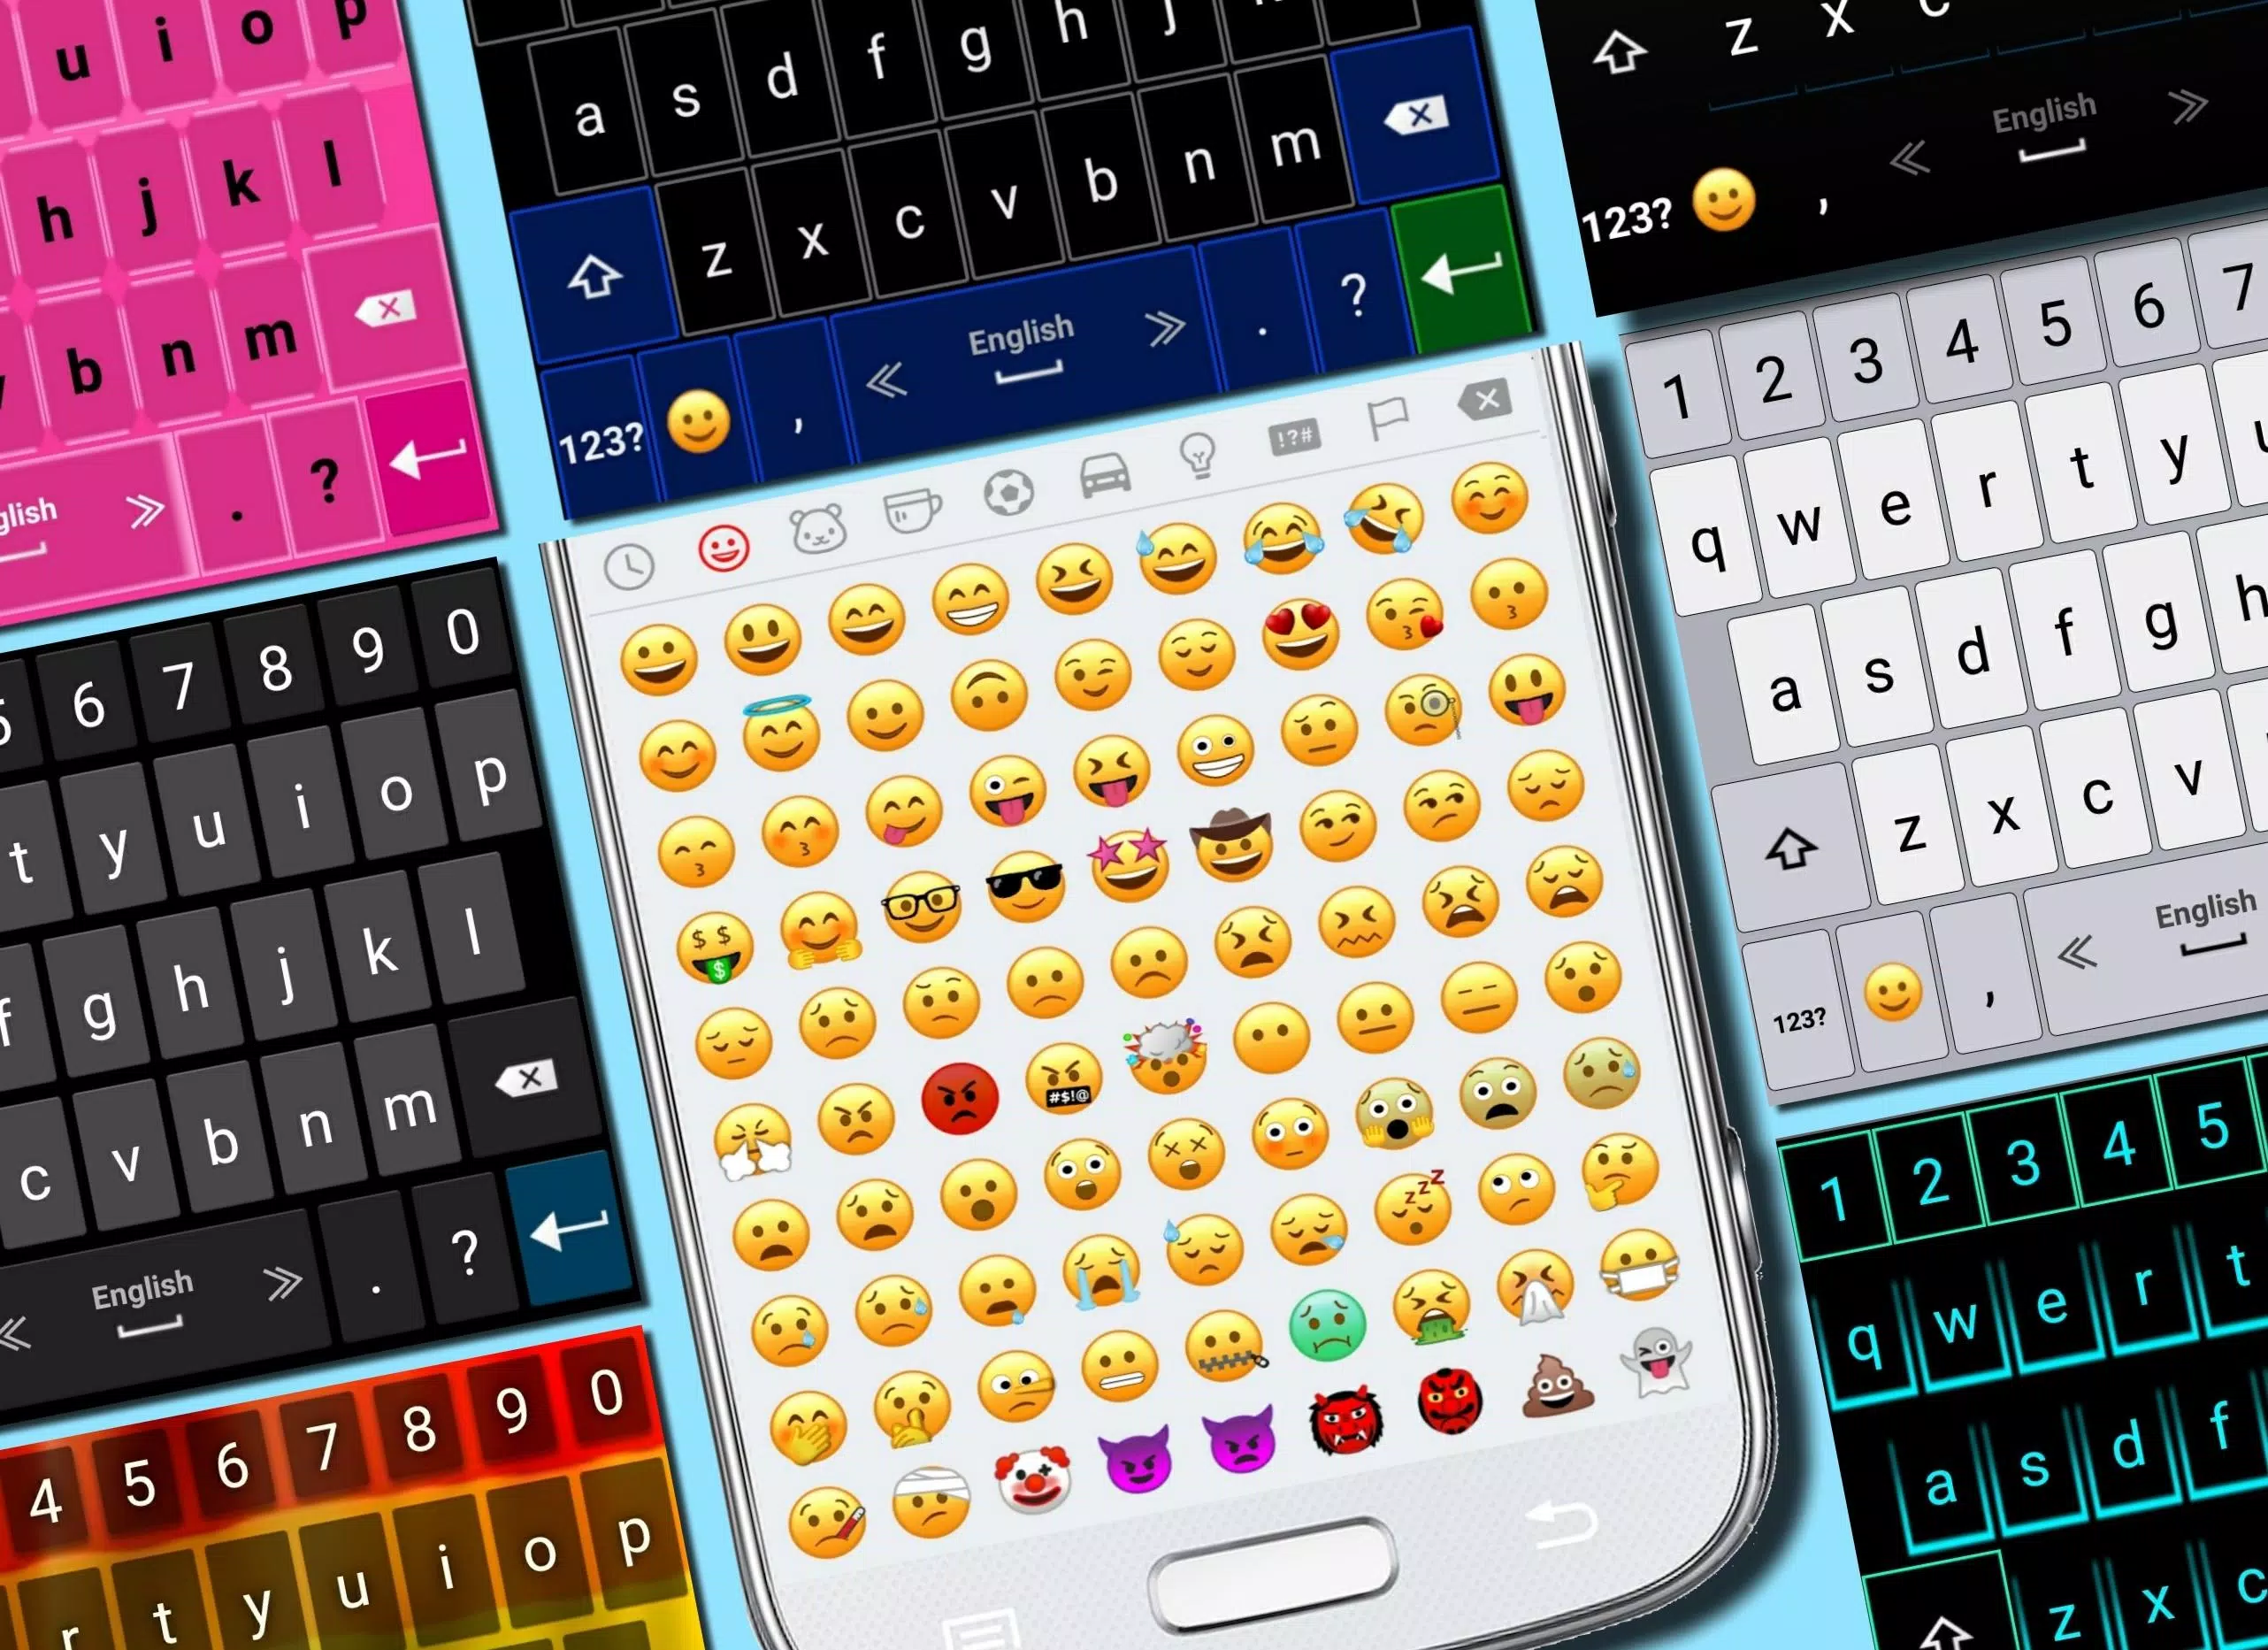 Download do APK de Teclado emoji 2020 para Android